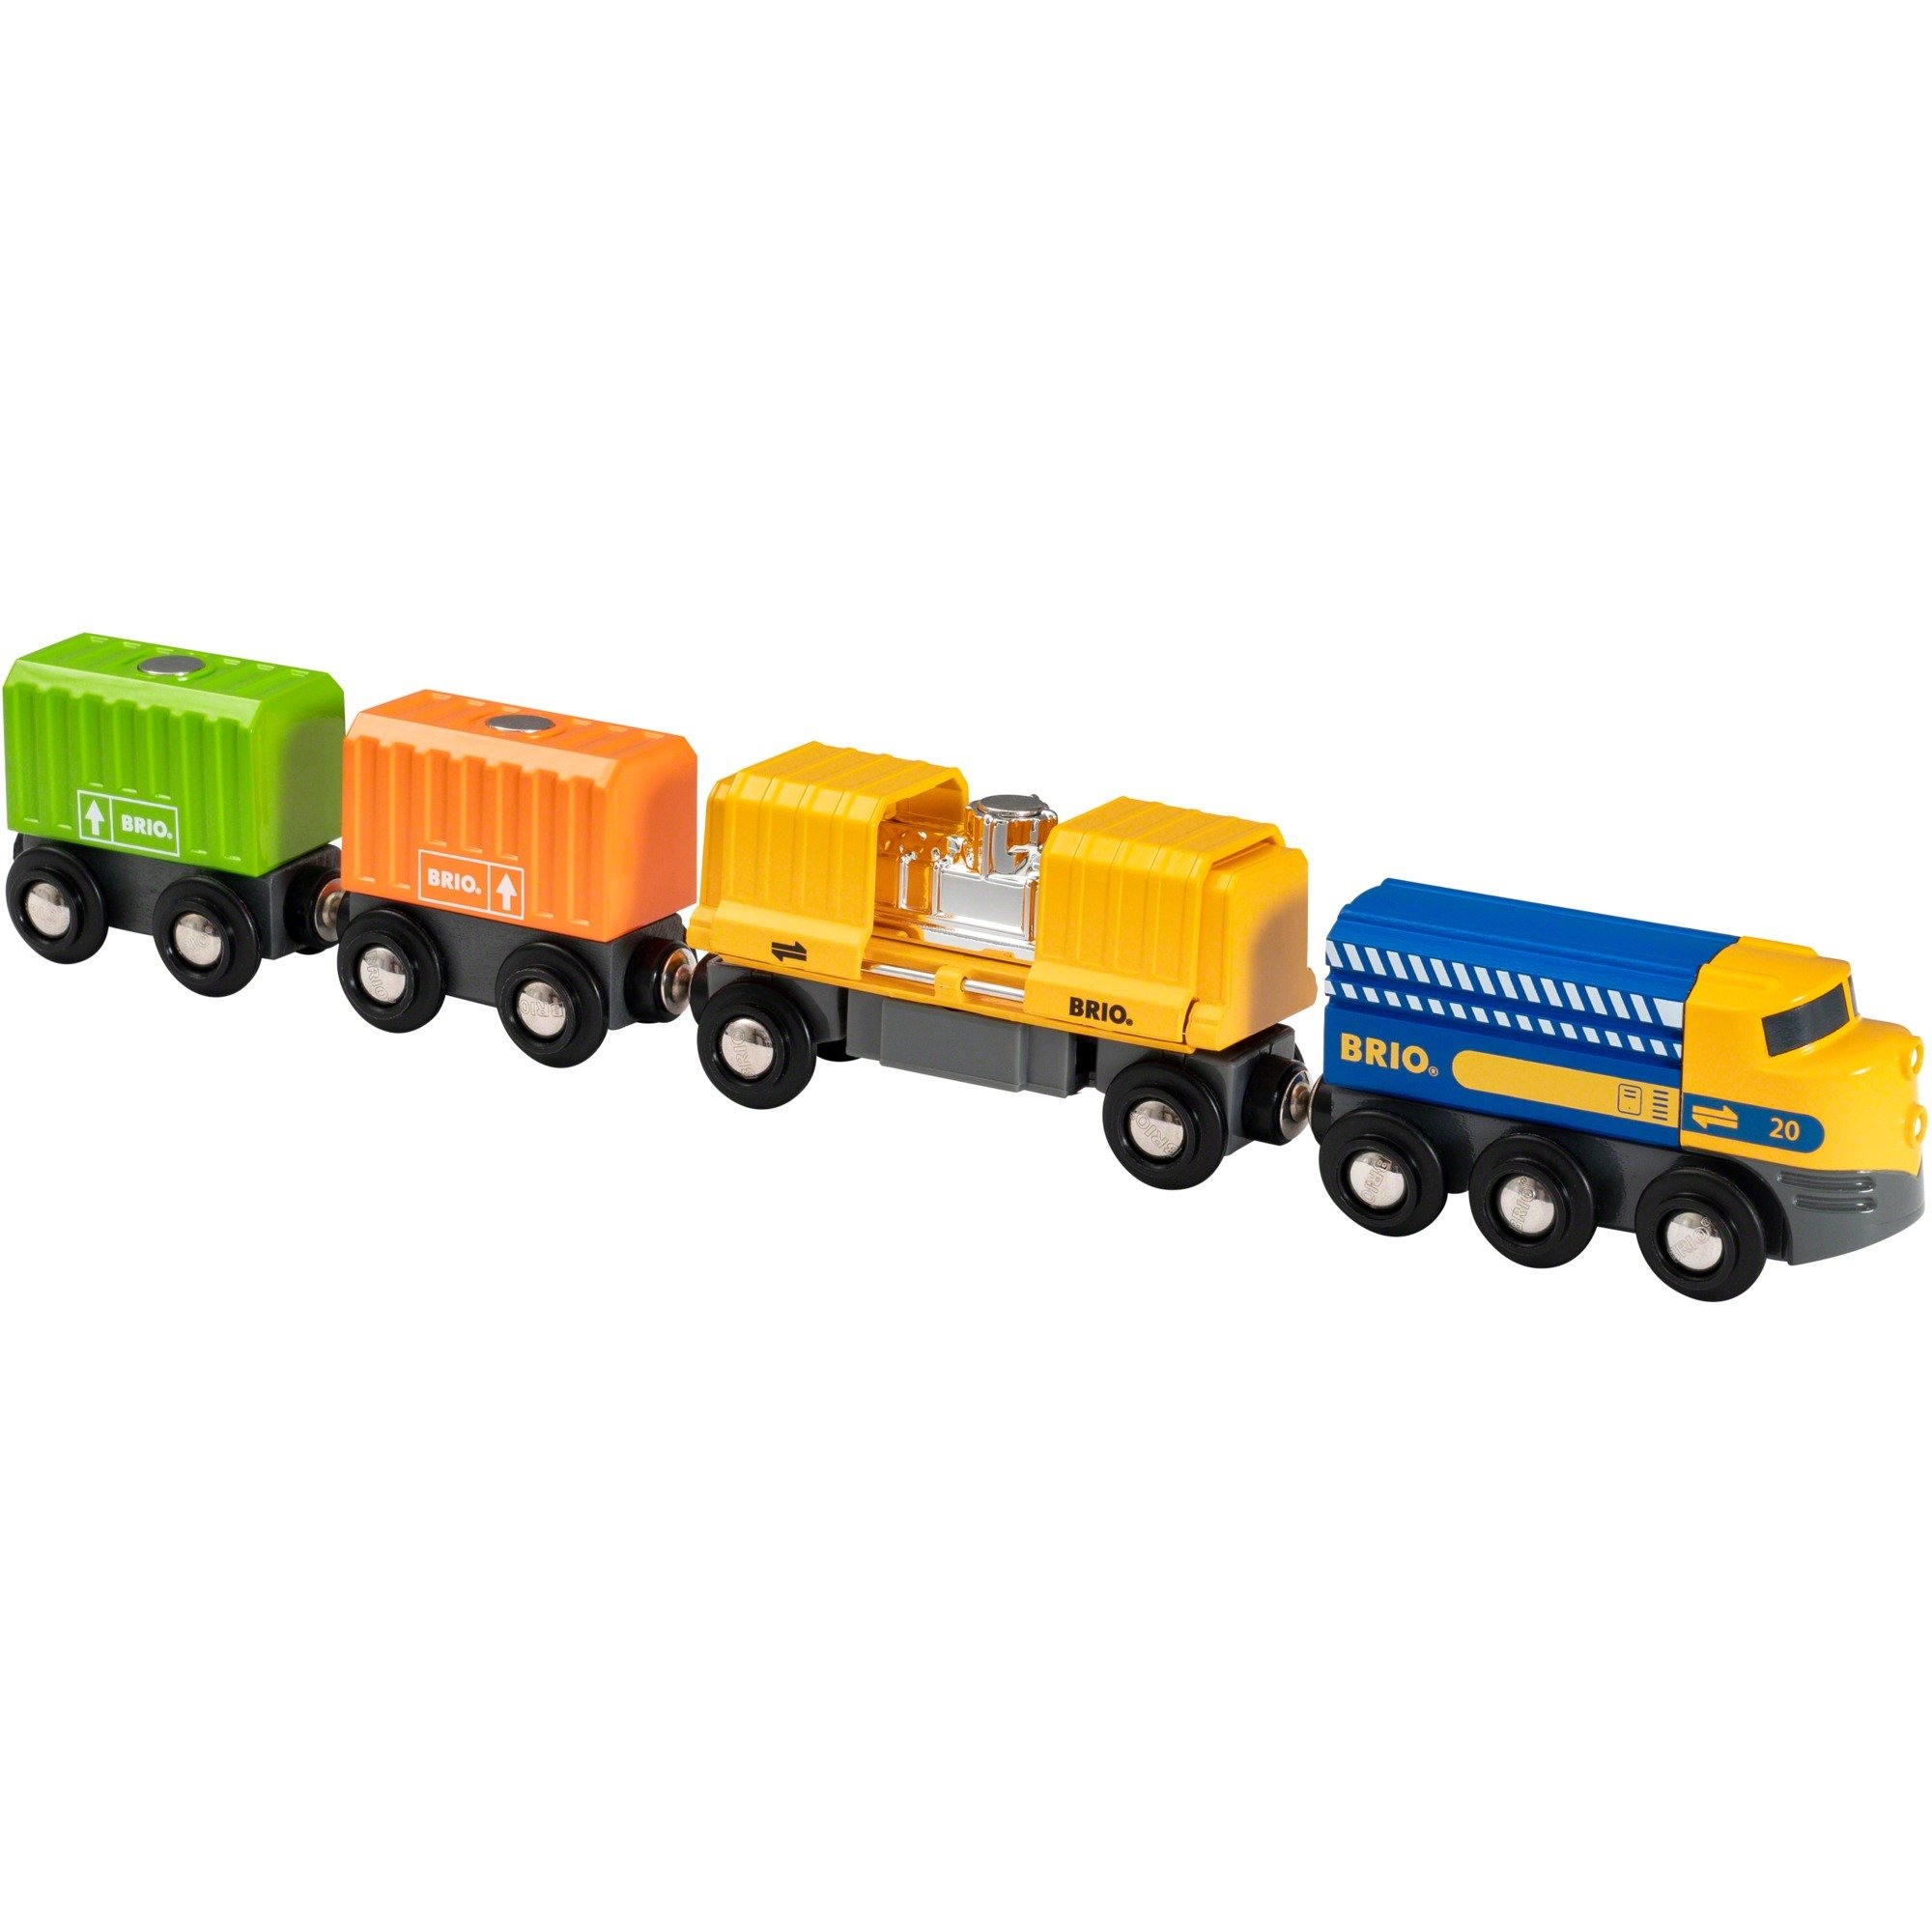 Güterzug mit drei Waggons, Spielfahrzeug